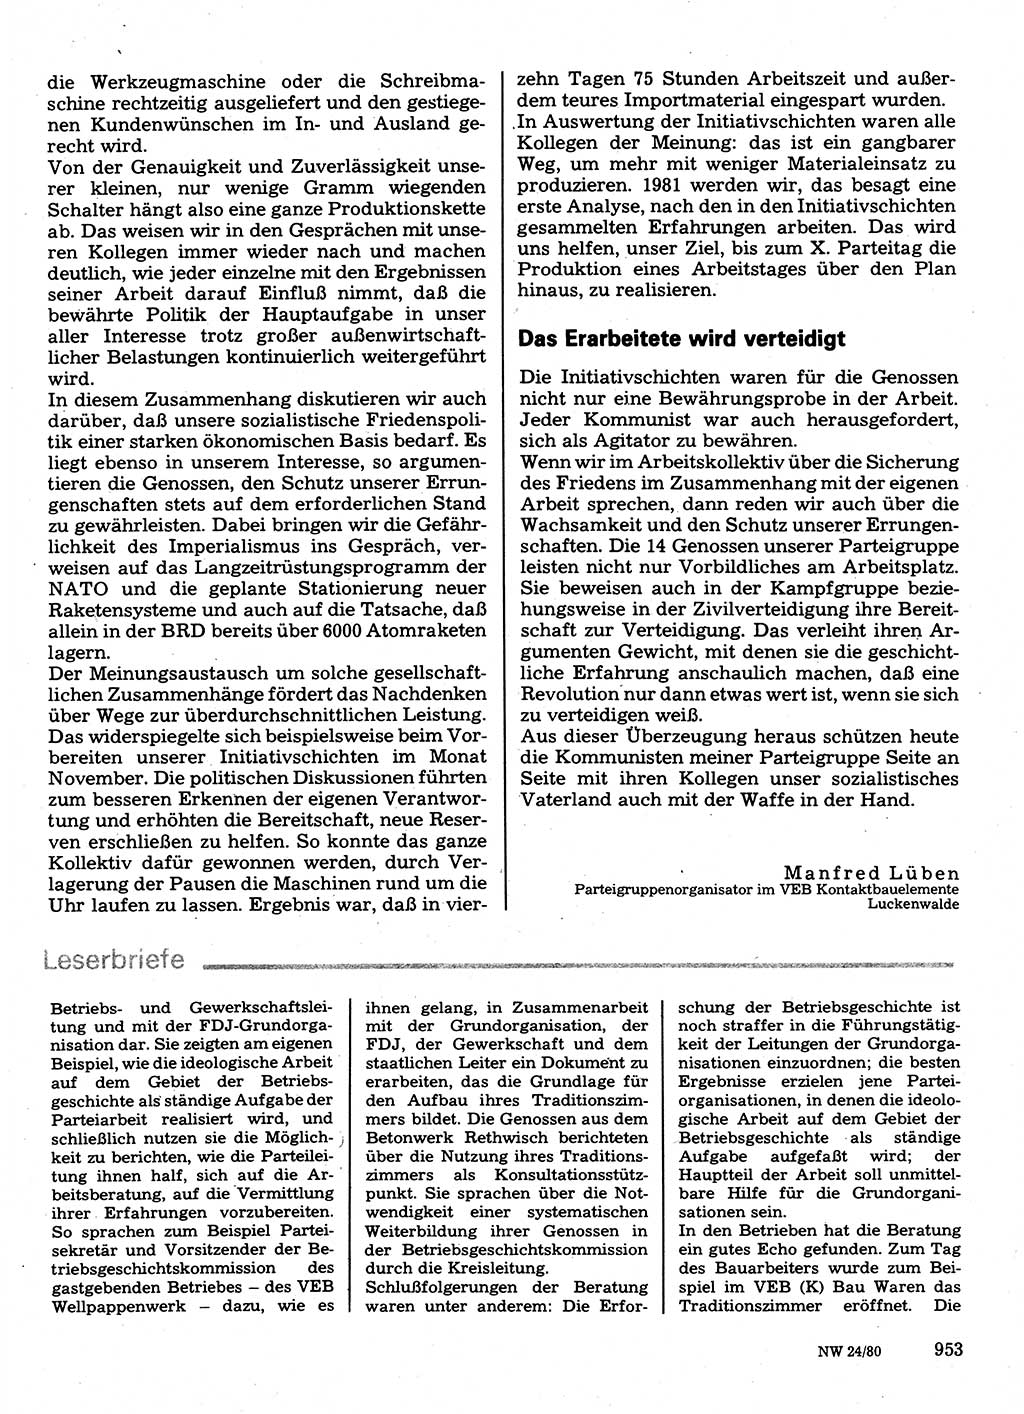 Neuer Weg (NW), Organ des Zentralkomitees (ZK) der SED (Sozialistische Einheitspartei Deutschlands) für Fragen des Parteilebens, 35. Jahrgang [Deutsche Demokratische Republik (DDR)] 1980, Seite 953 (NW ZK SED DDR 1980, S. 953)